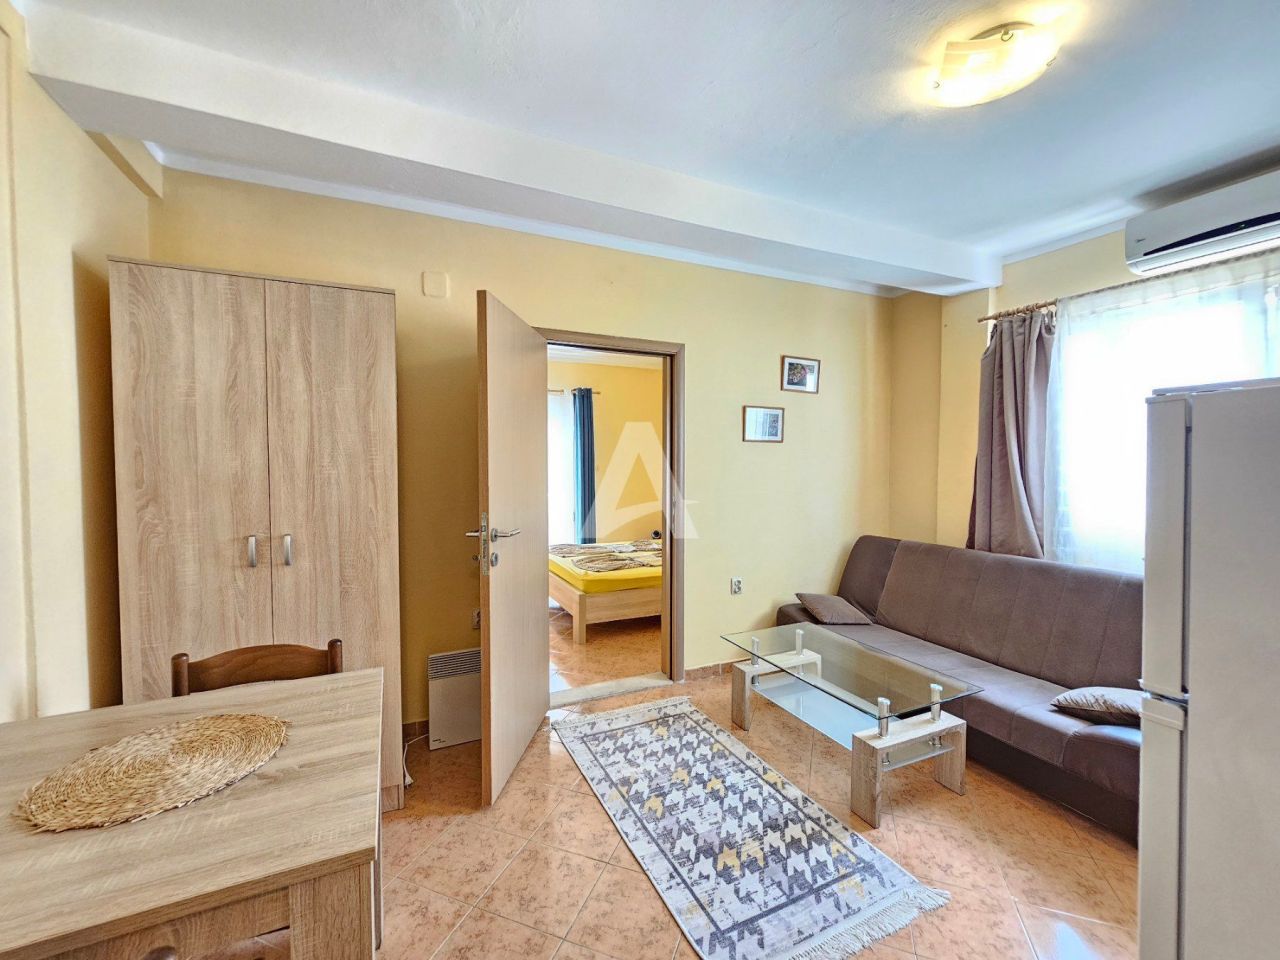 Apartment in Budva, Montenegro, 30 m2 - Foto 1